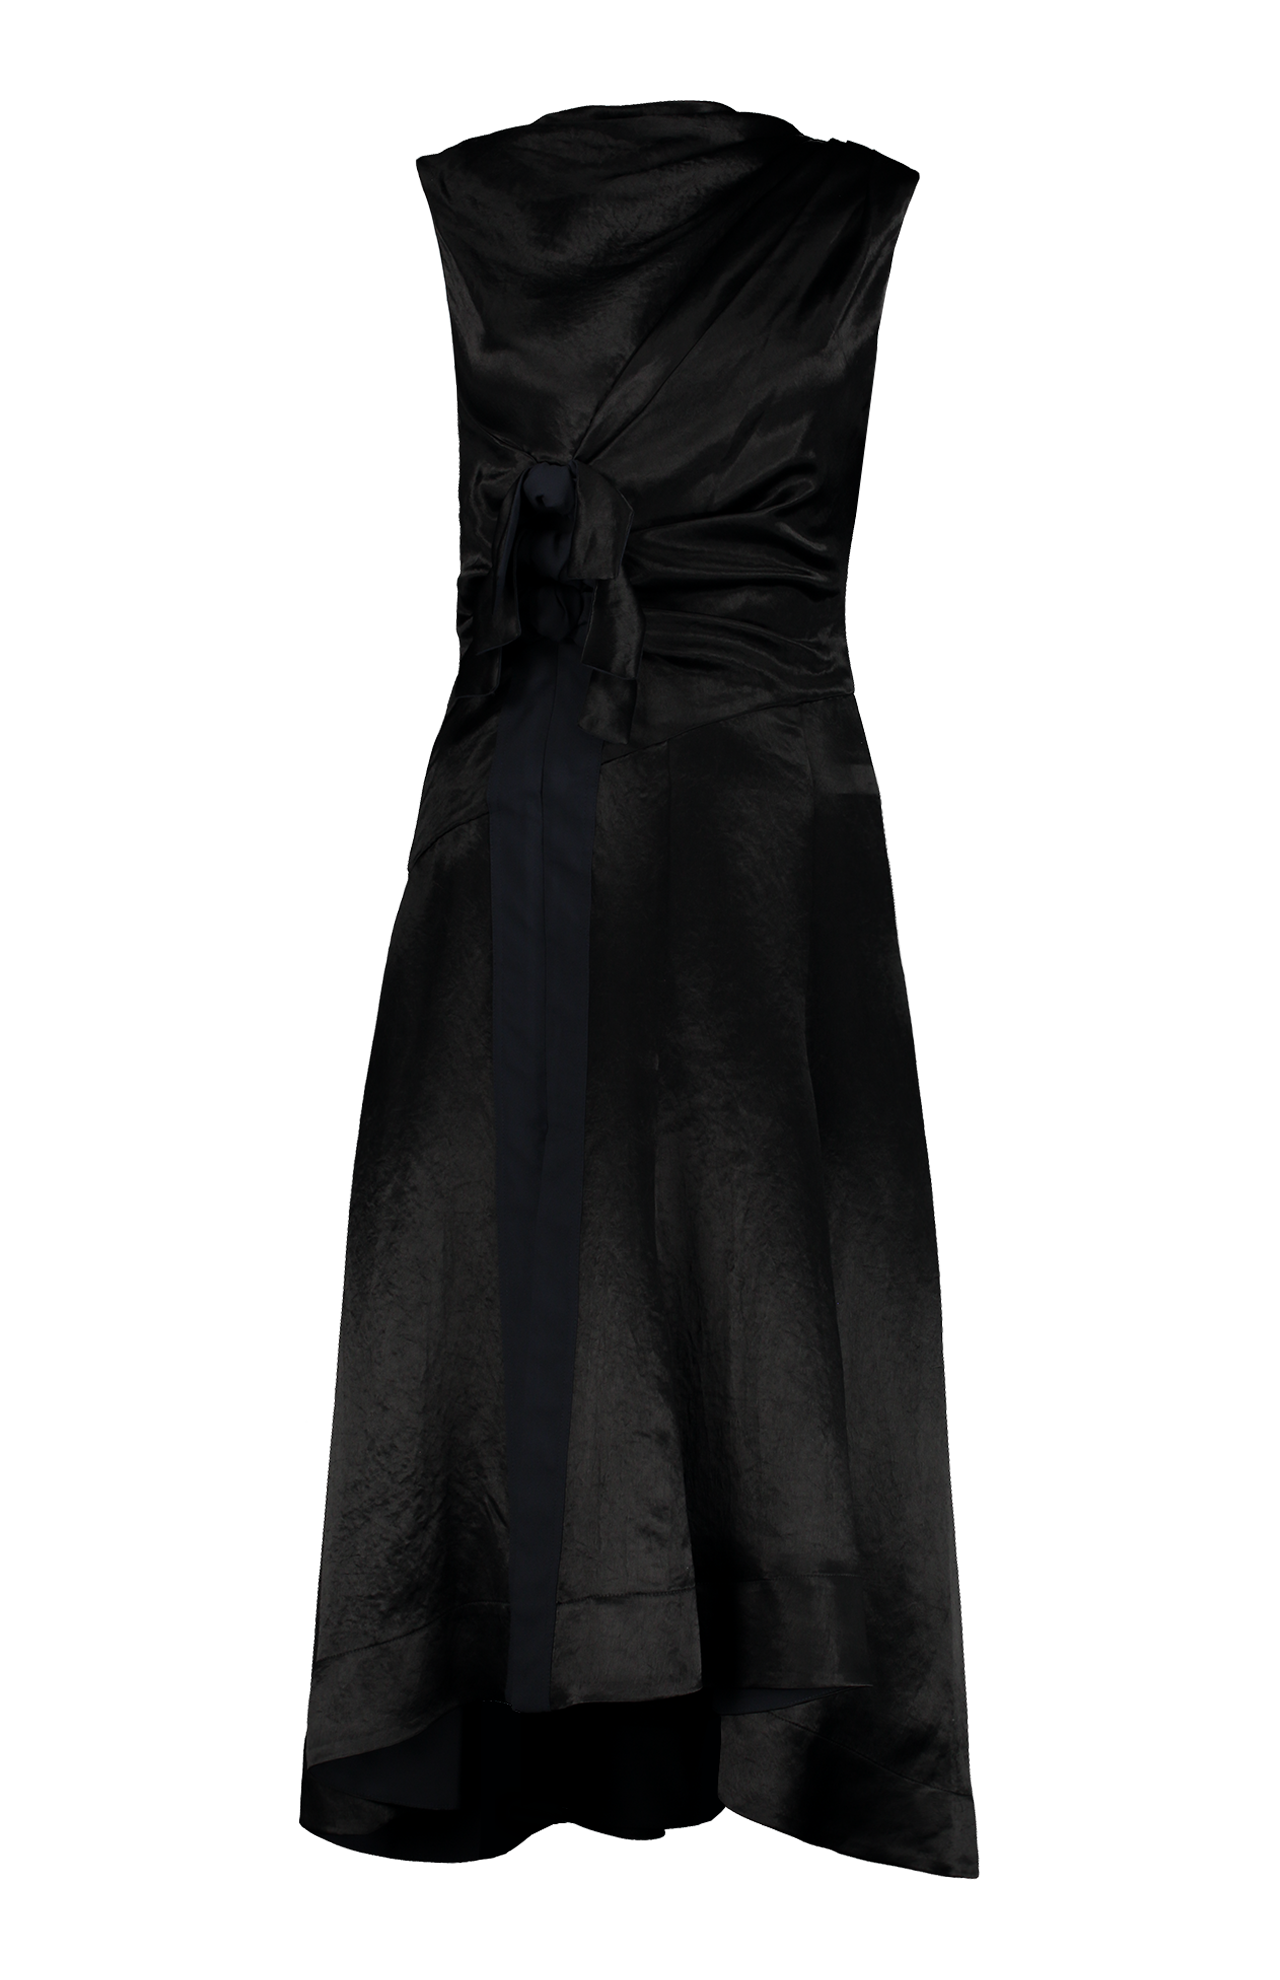 Liberty Satin Dress with Ties (7162962018419)